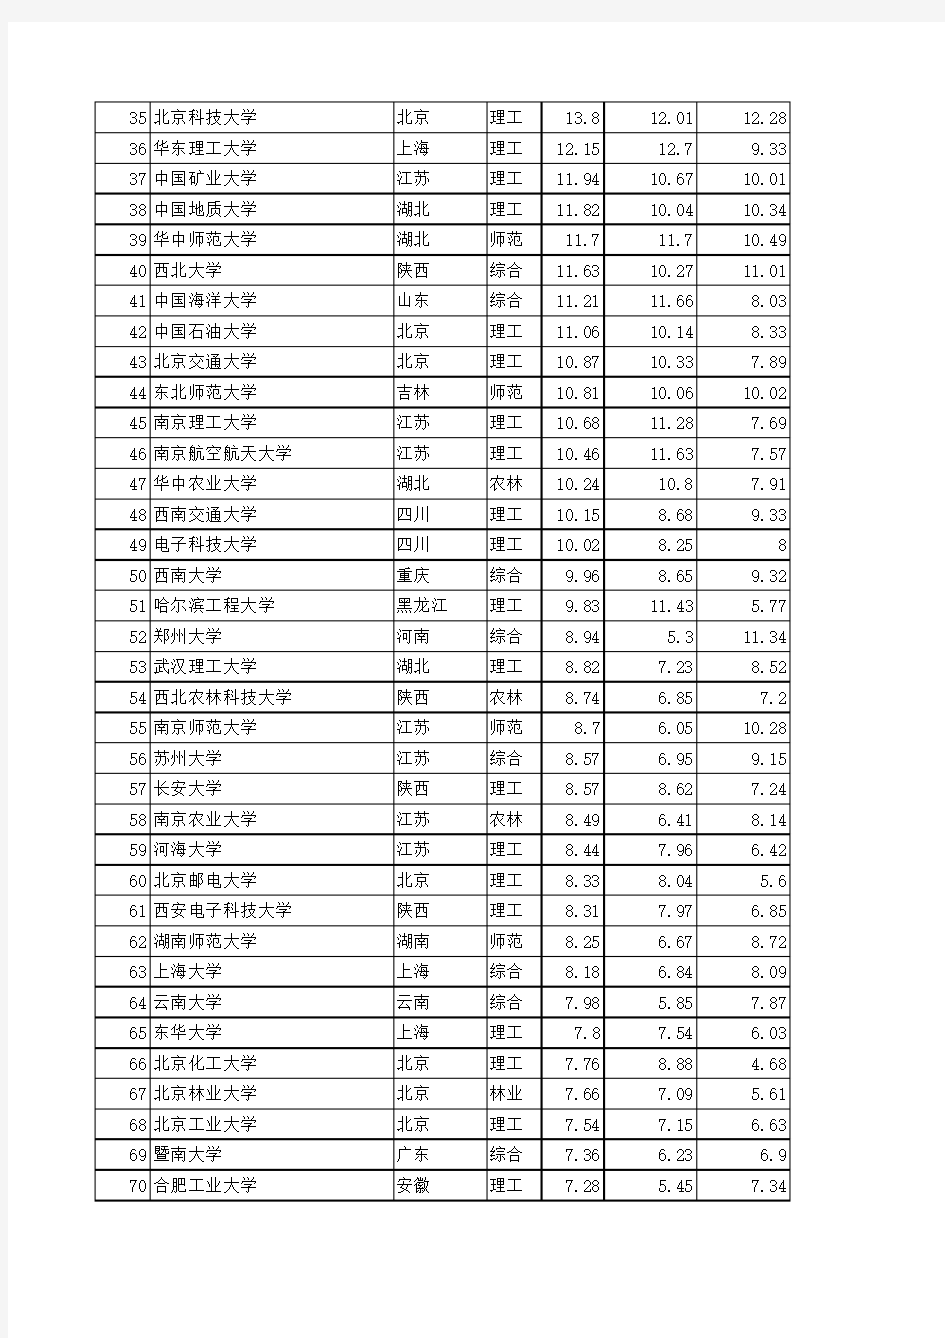 2011年最新中国大学排名